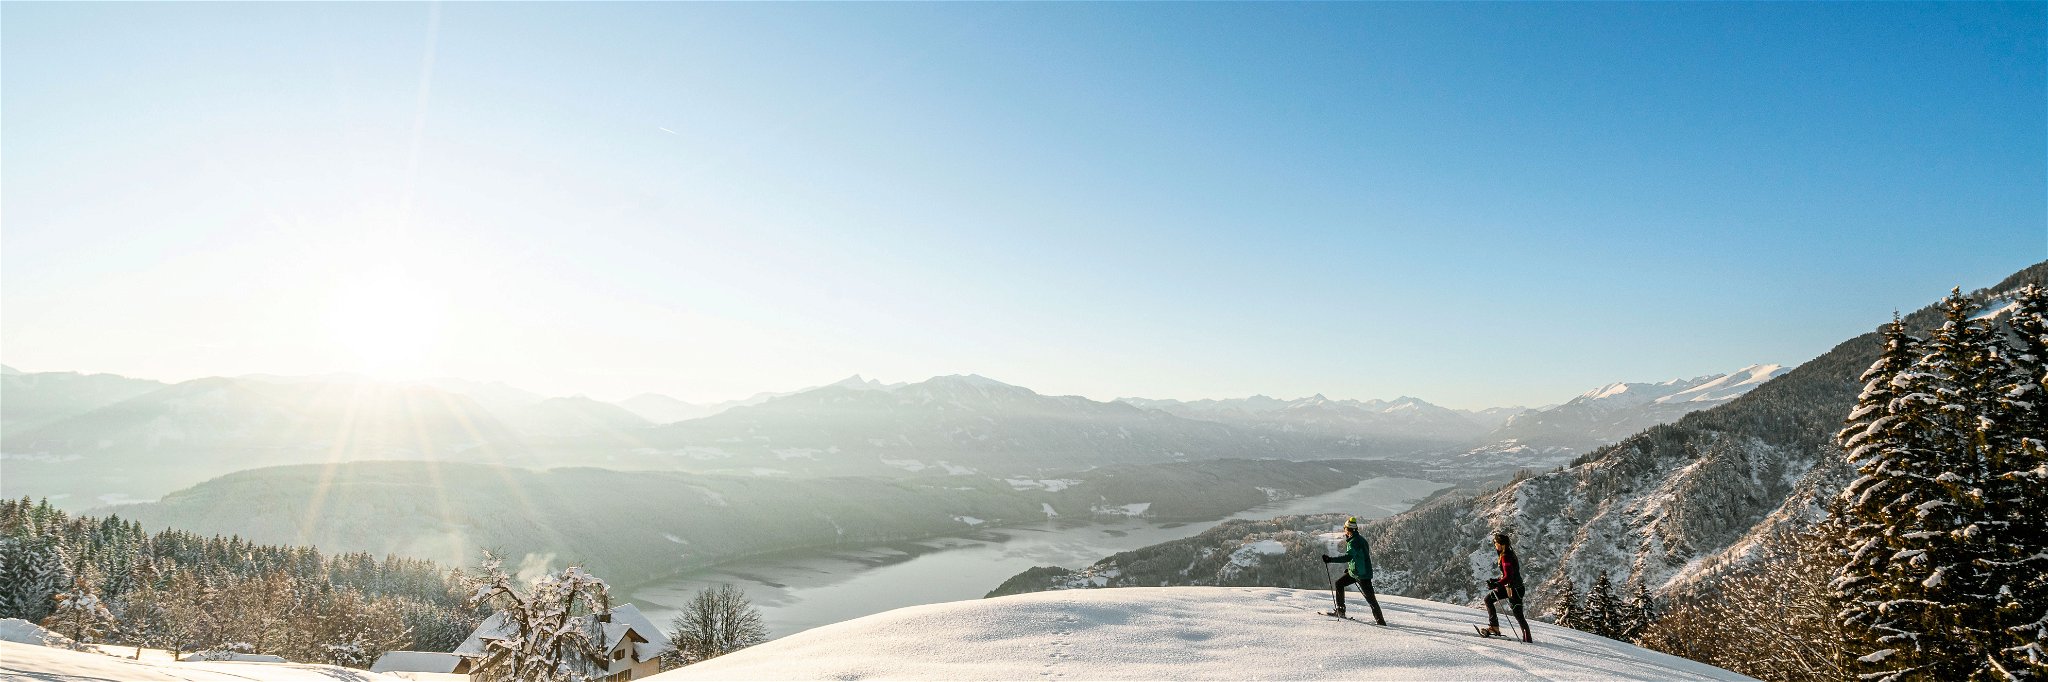 Rund um den Millstätter See liegen zirka 30 große Kärntner Skigebiete mit über  800 Kilometer bestens präparierten Pisten. Auch das Schneeschuhwandern ist sehr beliebt. 